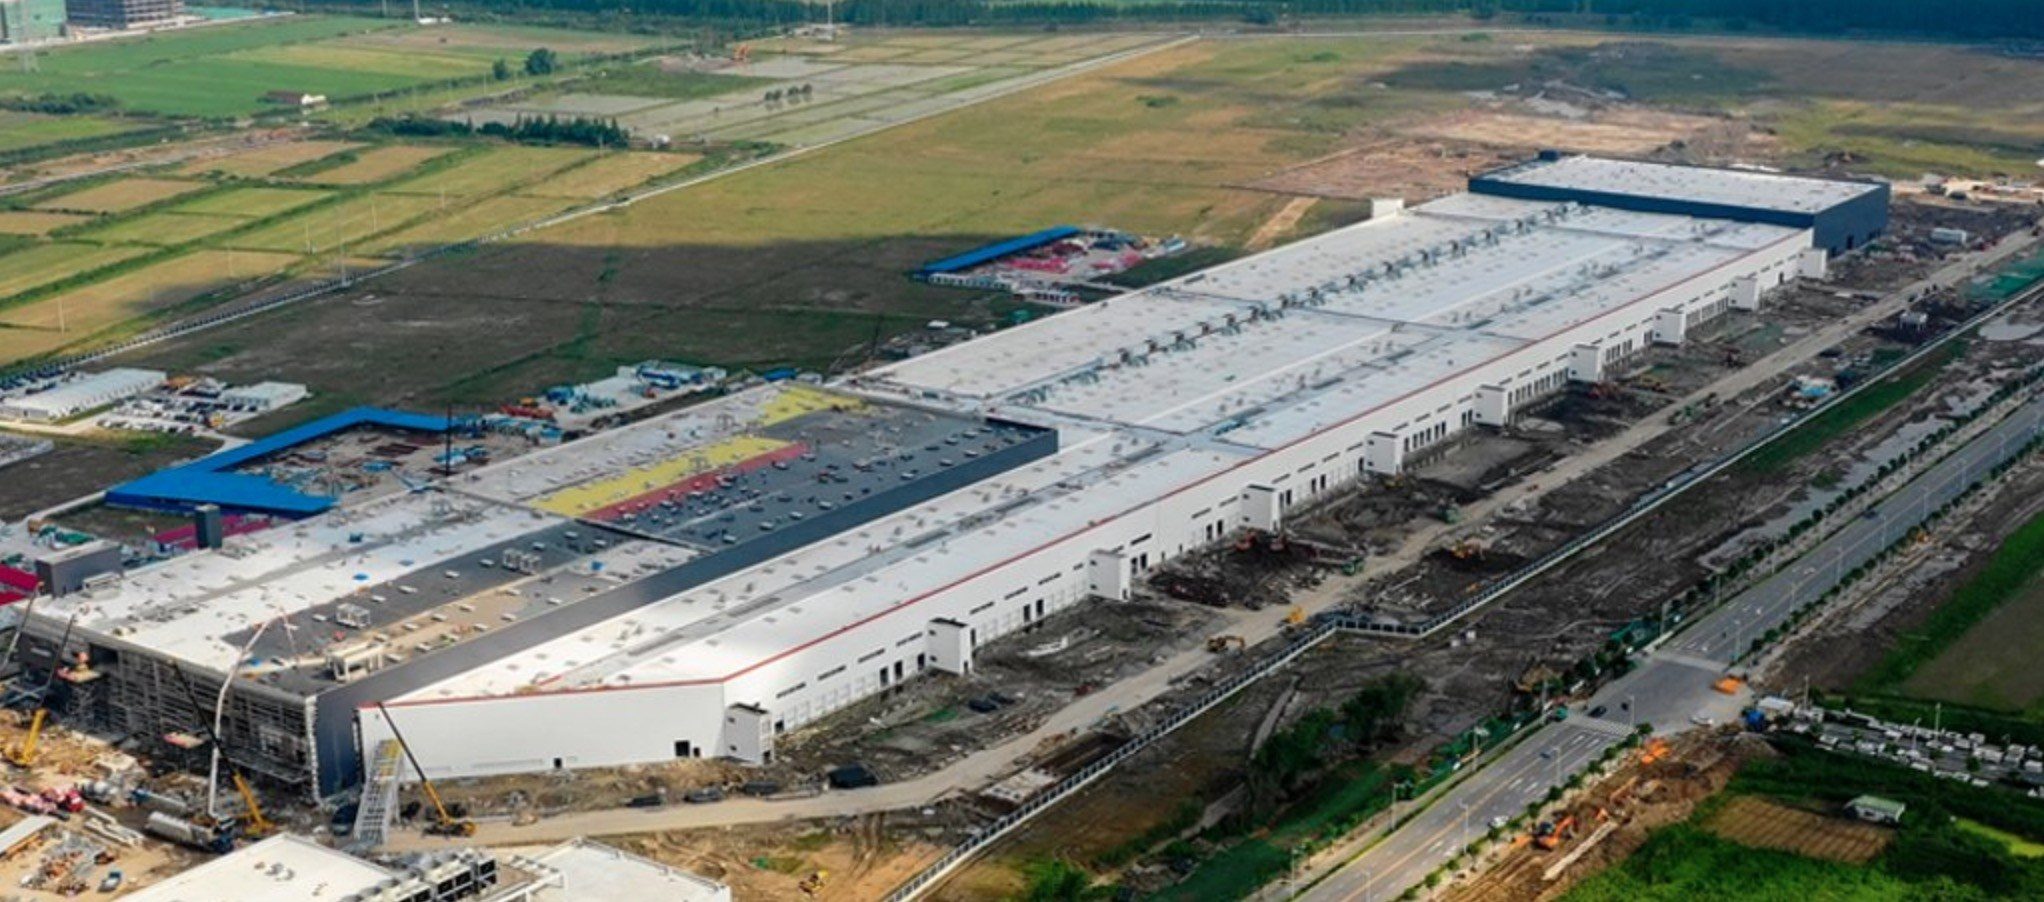 Tesla'nın Çin'deki ilk fabrikası Gigafactory 3'ten yeni görüntüler geldi